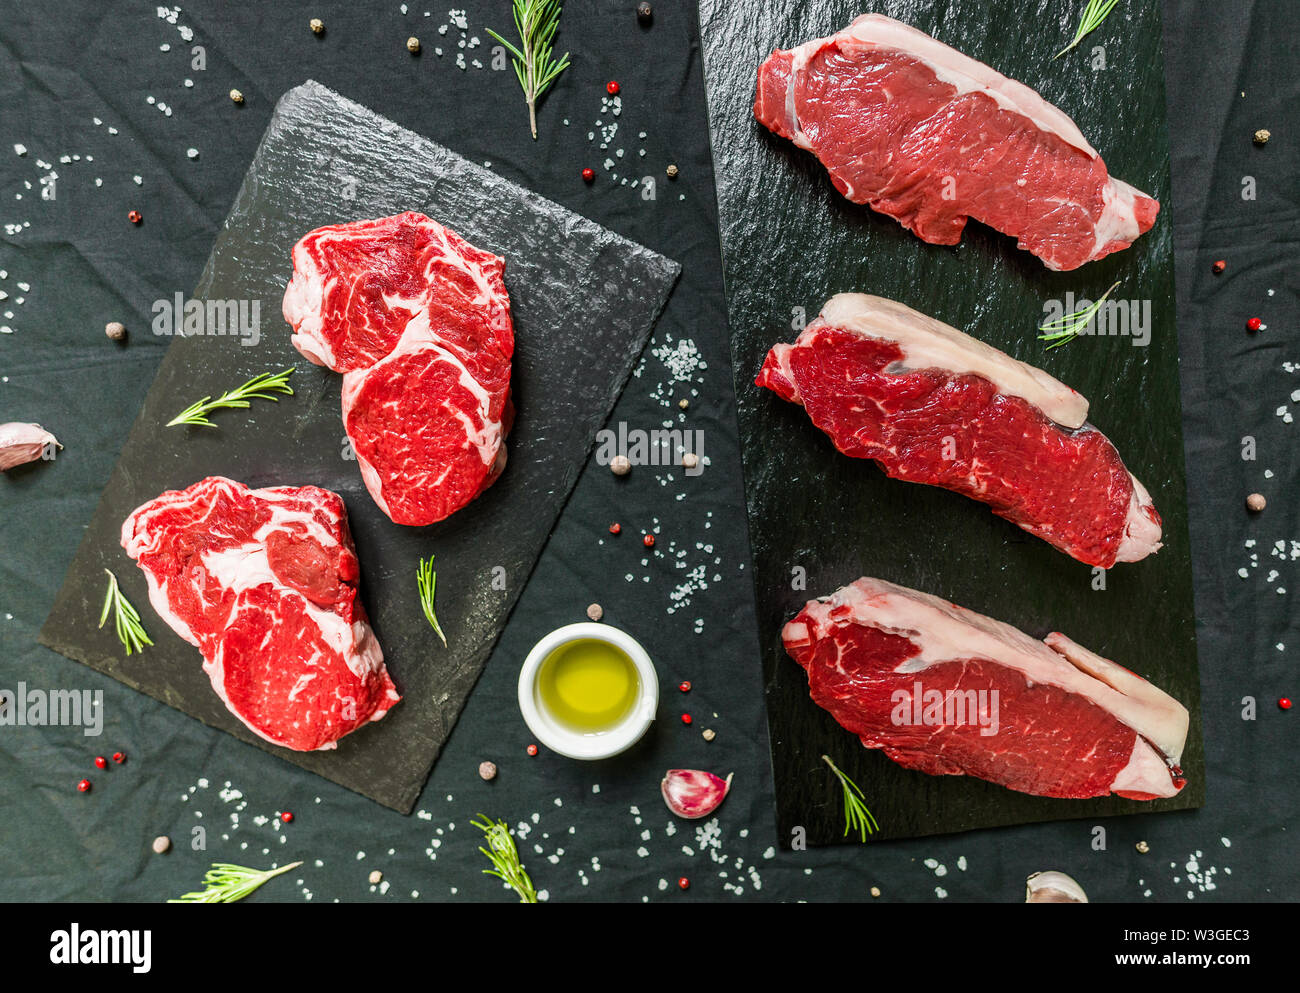 Rindfleisch Rind fleisch Steaks mit Gewürzen und Kräutern auf schwarzem Hintergrund Stockfoto